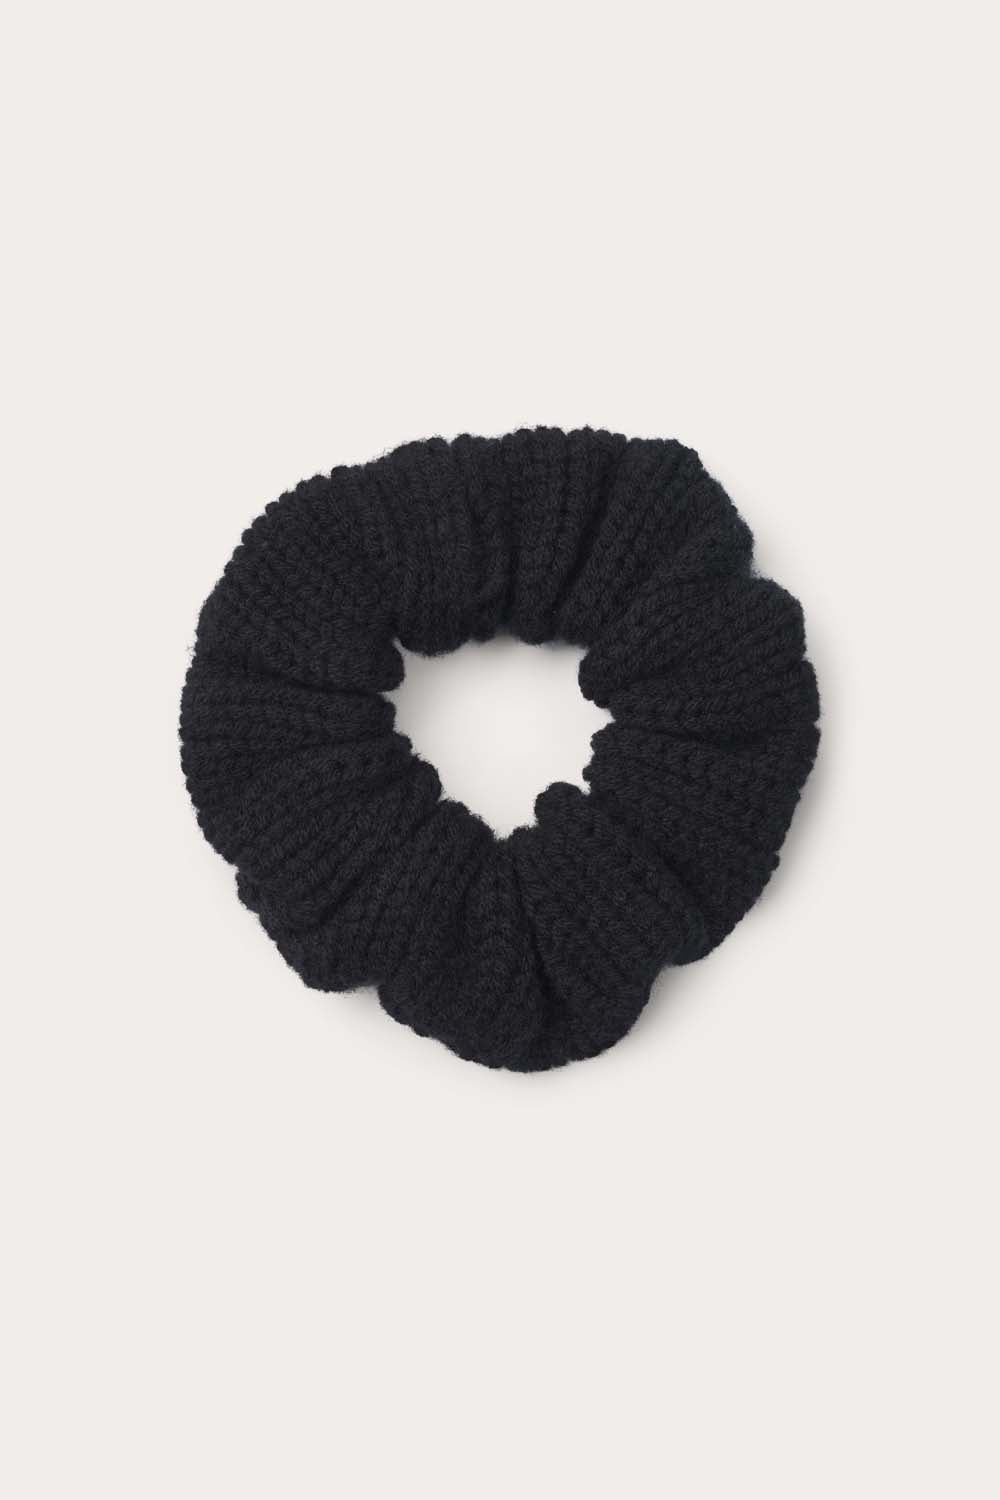 O'TAY Medium Scrunchie Hair accessories Black